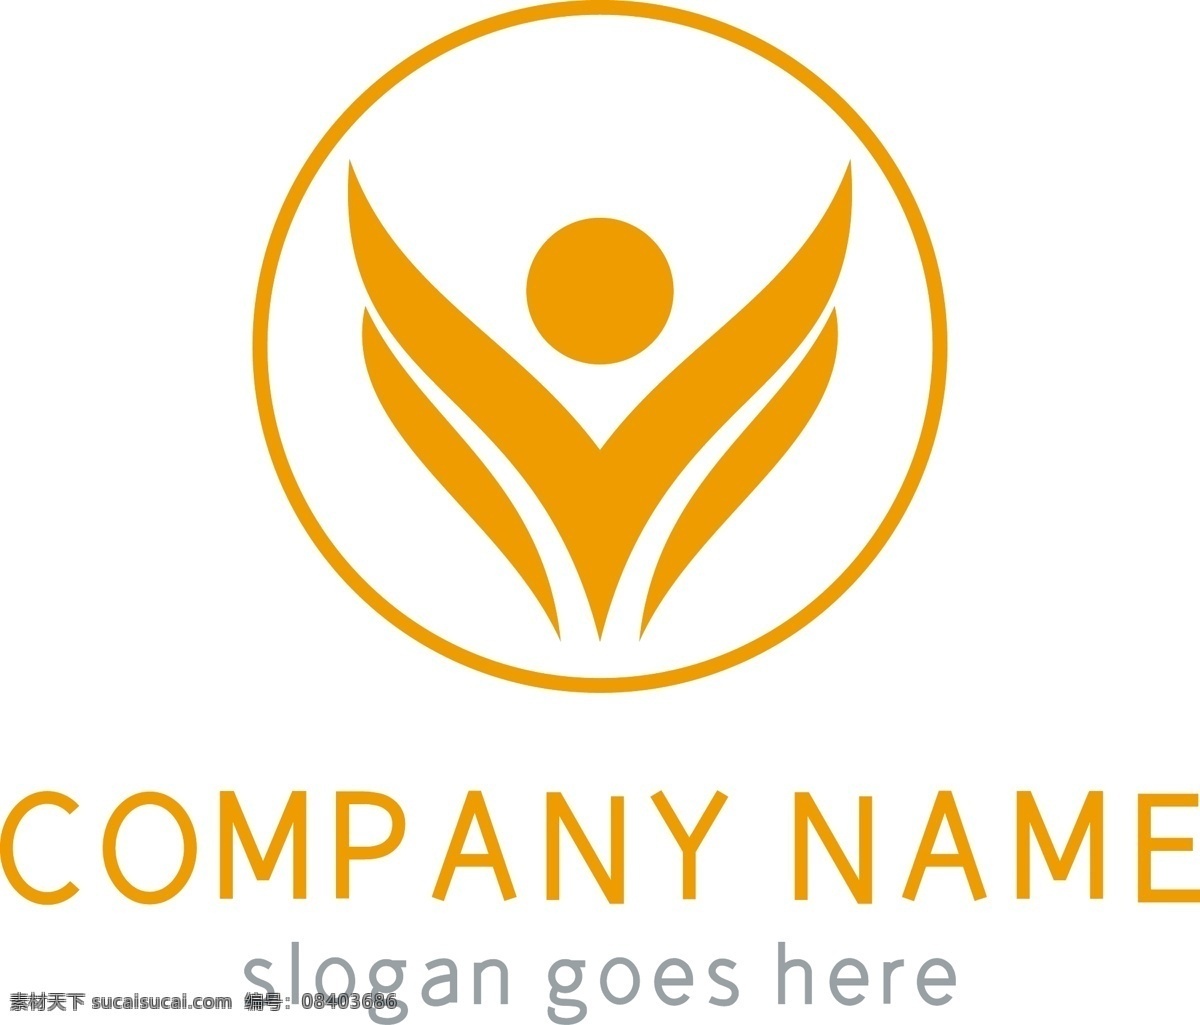 黄色 创意 圆形 人物 形象 科技 logo logo设计 创意logo 图形logo 圆形logo 互联网 科技logo 扁平化 手掌